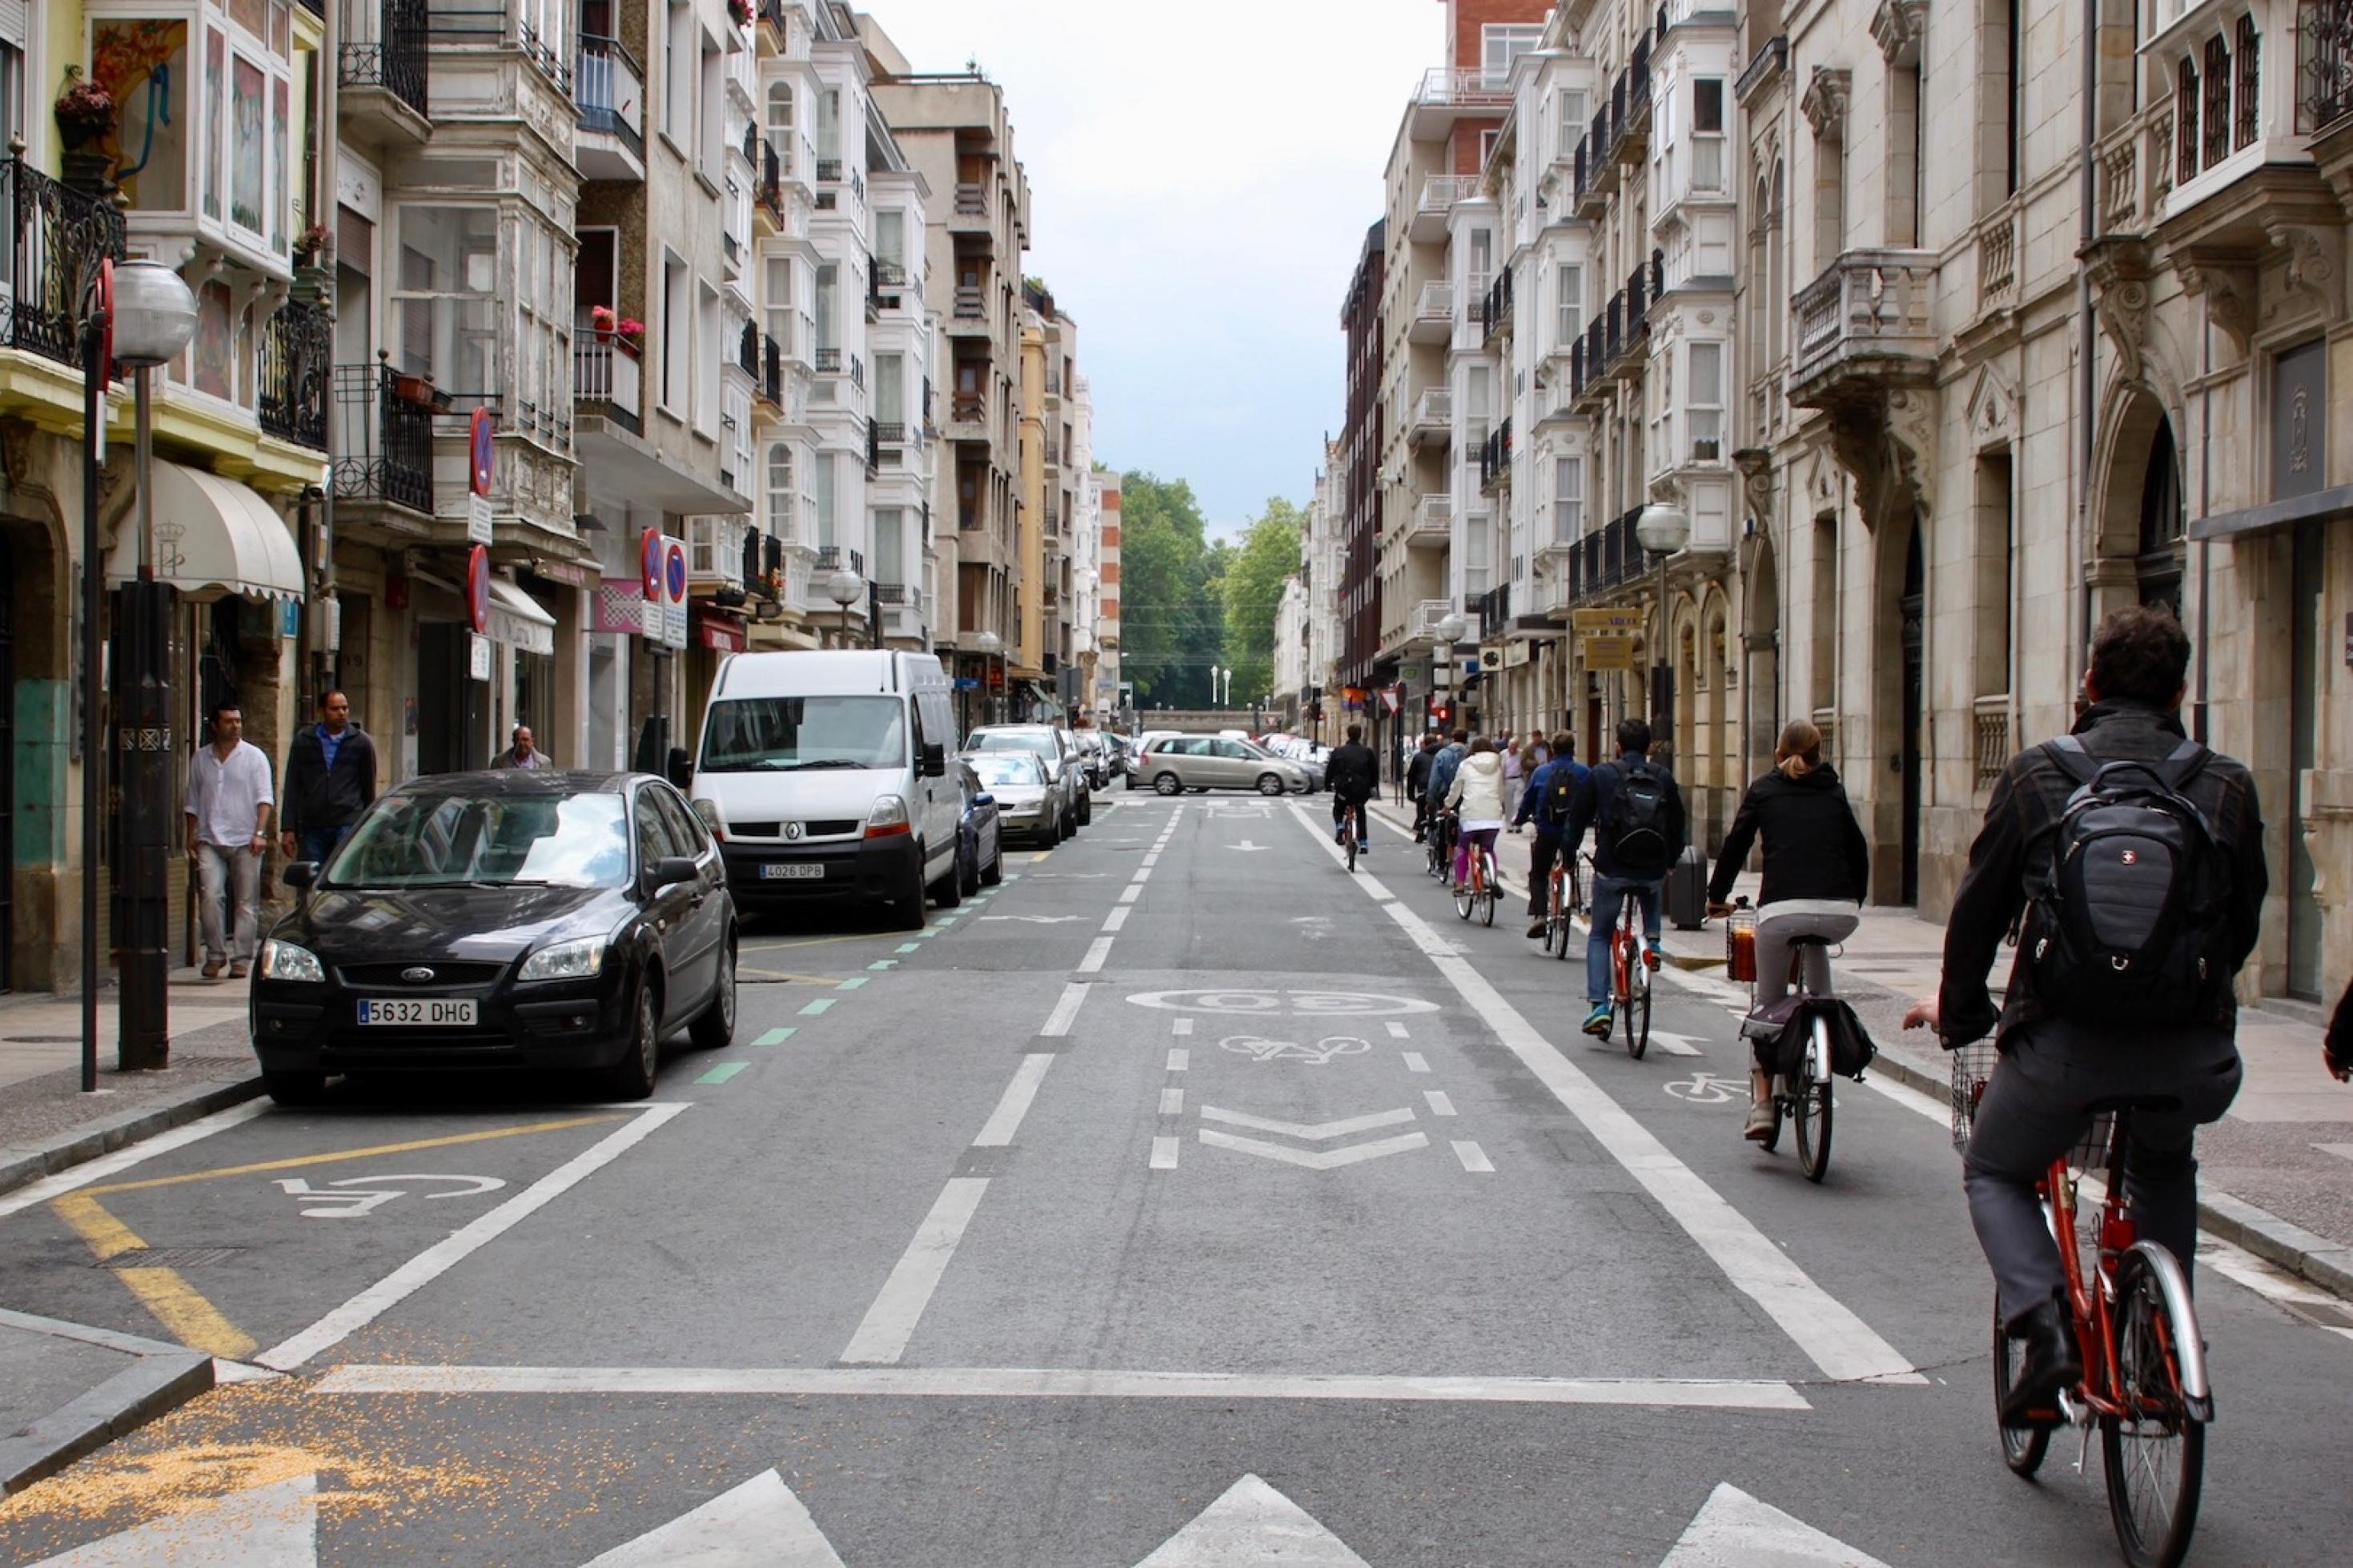 Eine Straße, die zwischen Altbauten verläuft. Radfahrer nutzen ein Teil der rechten Spur, links stehen parkende Autos.